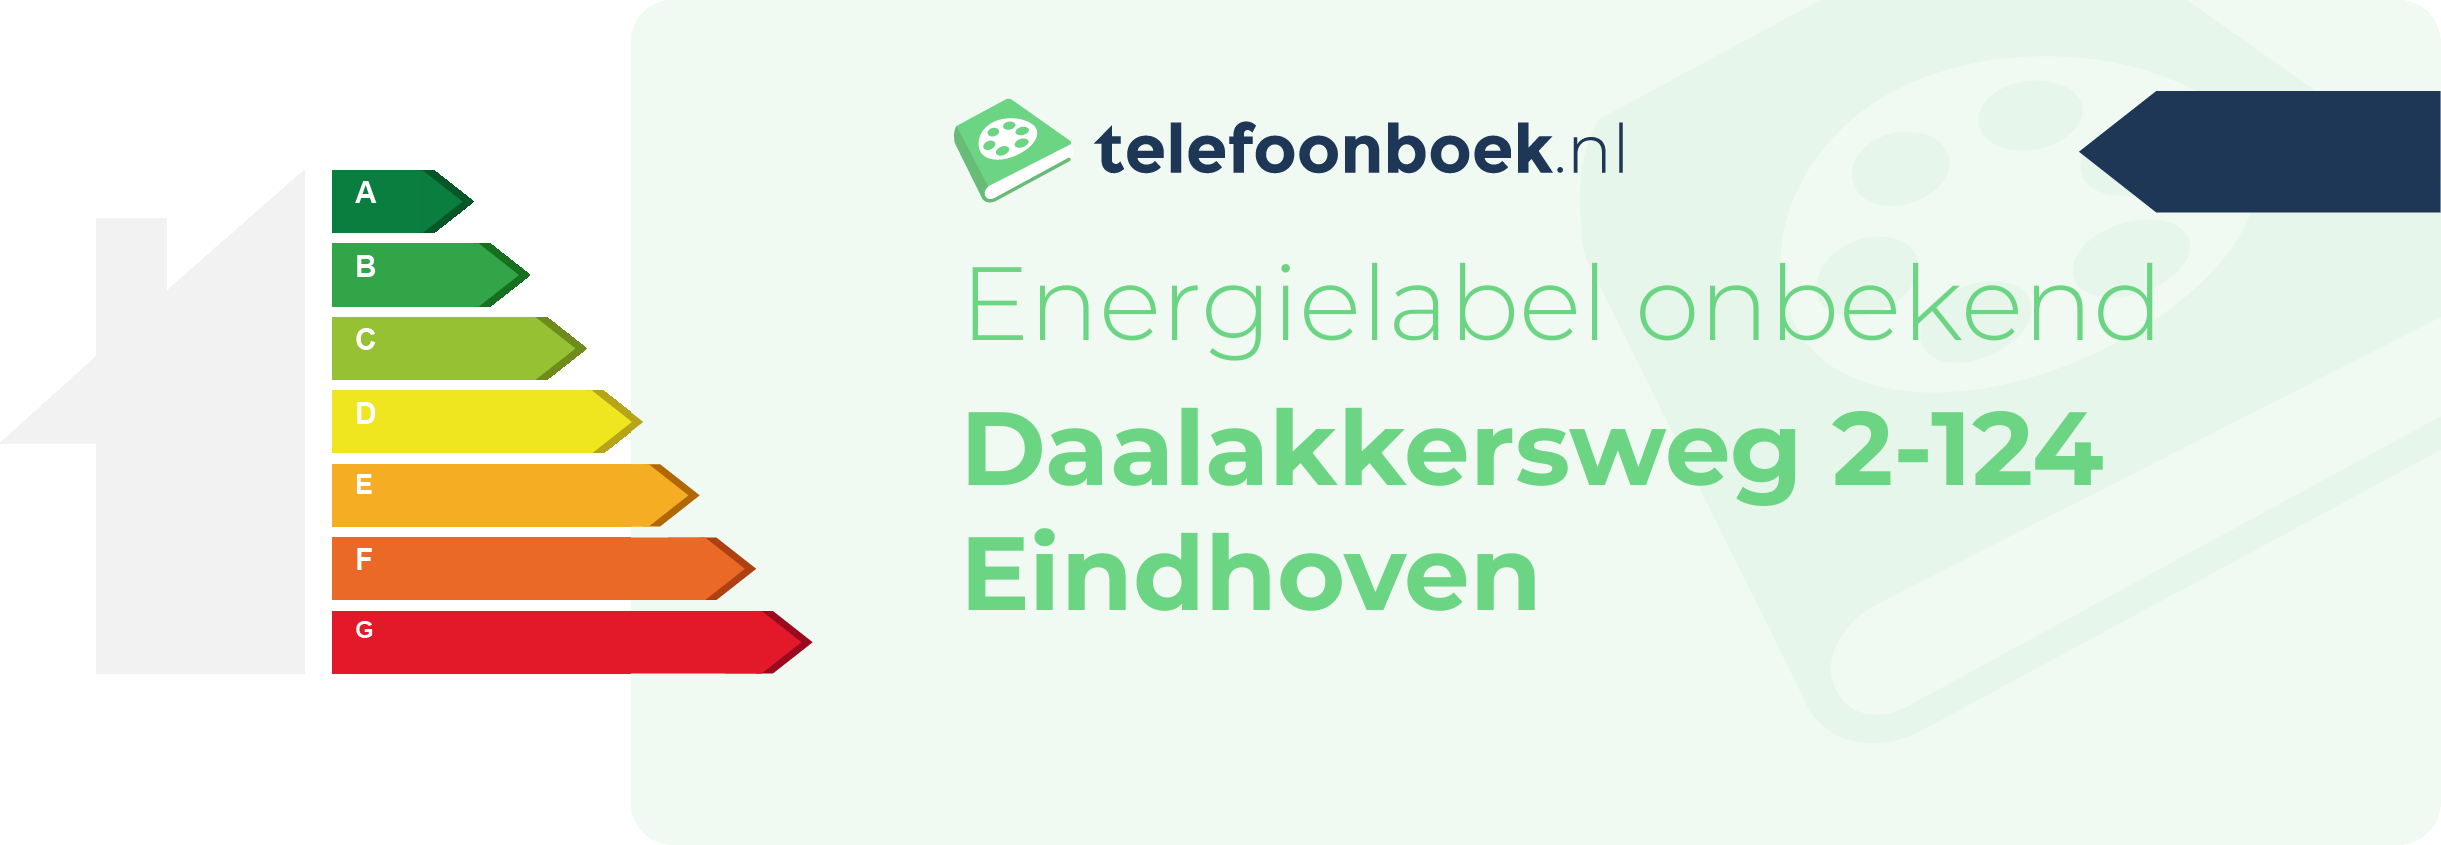 Energielabel Daalakkersweg 2-124 Eindhoven